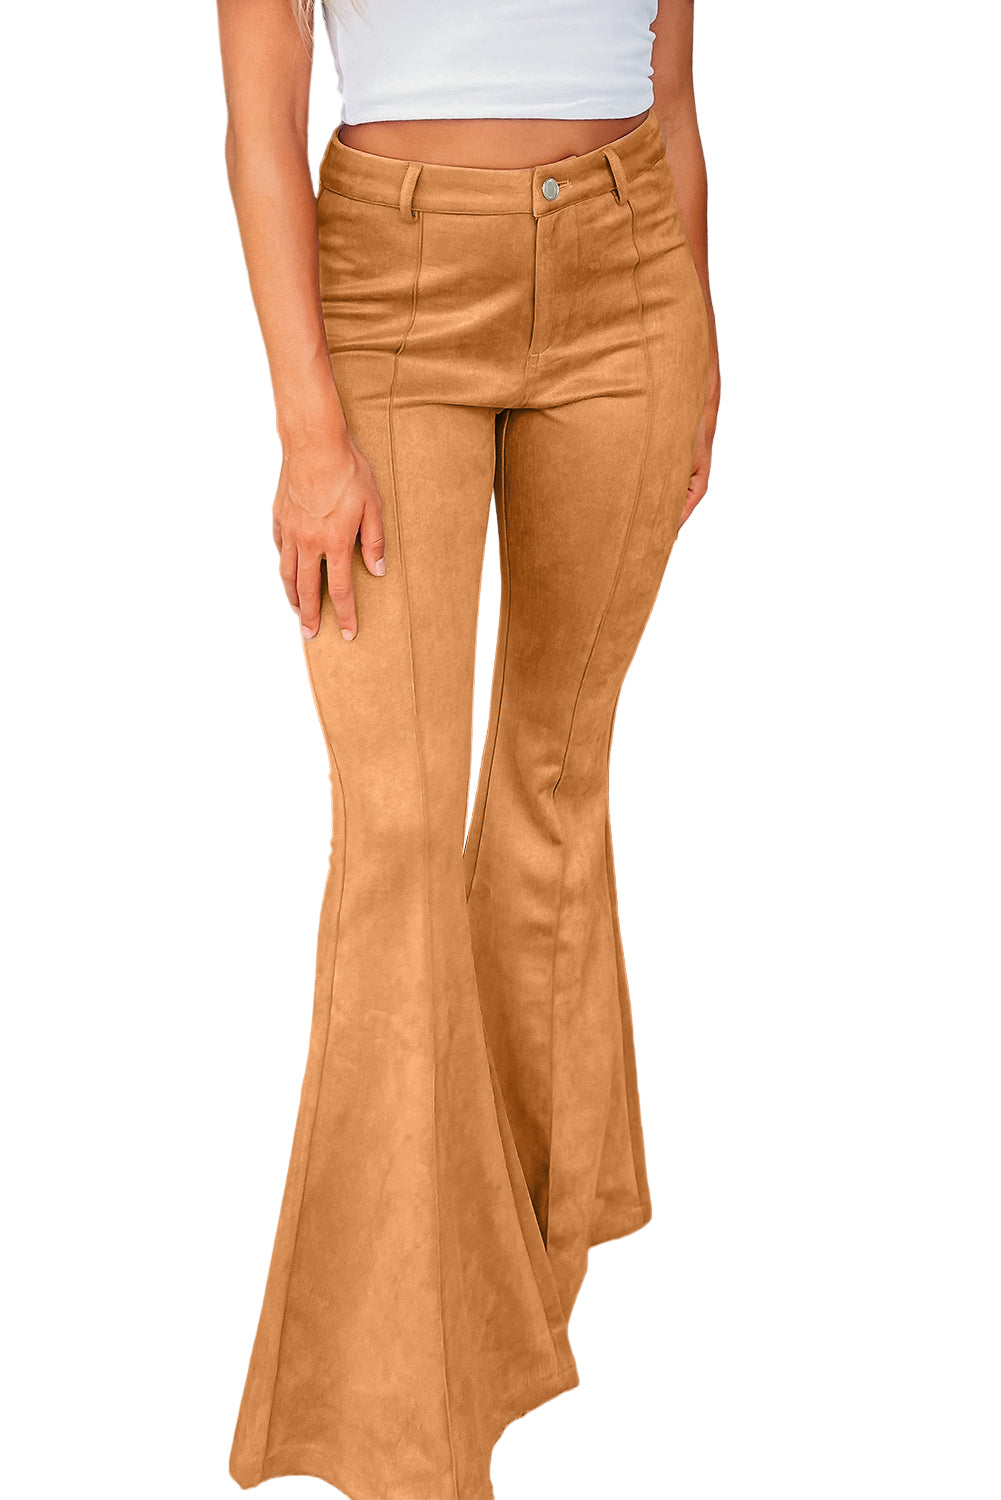 Pantalon évasé en daim marron à coutures apparentes avec poches